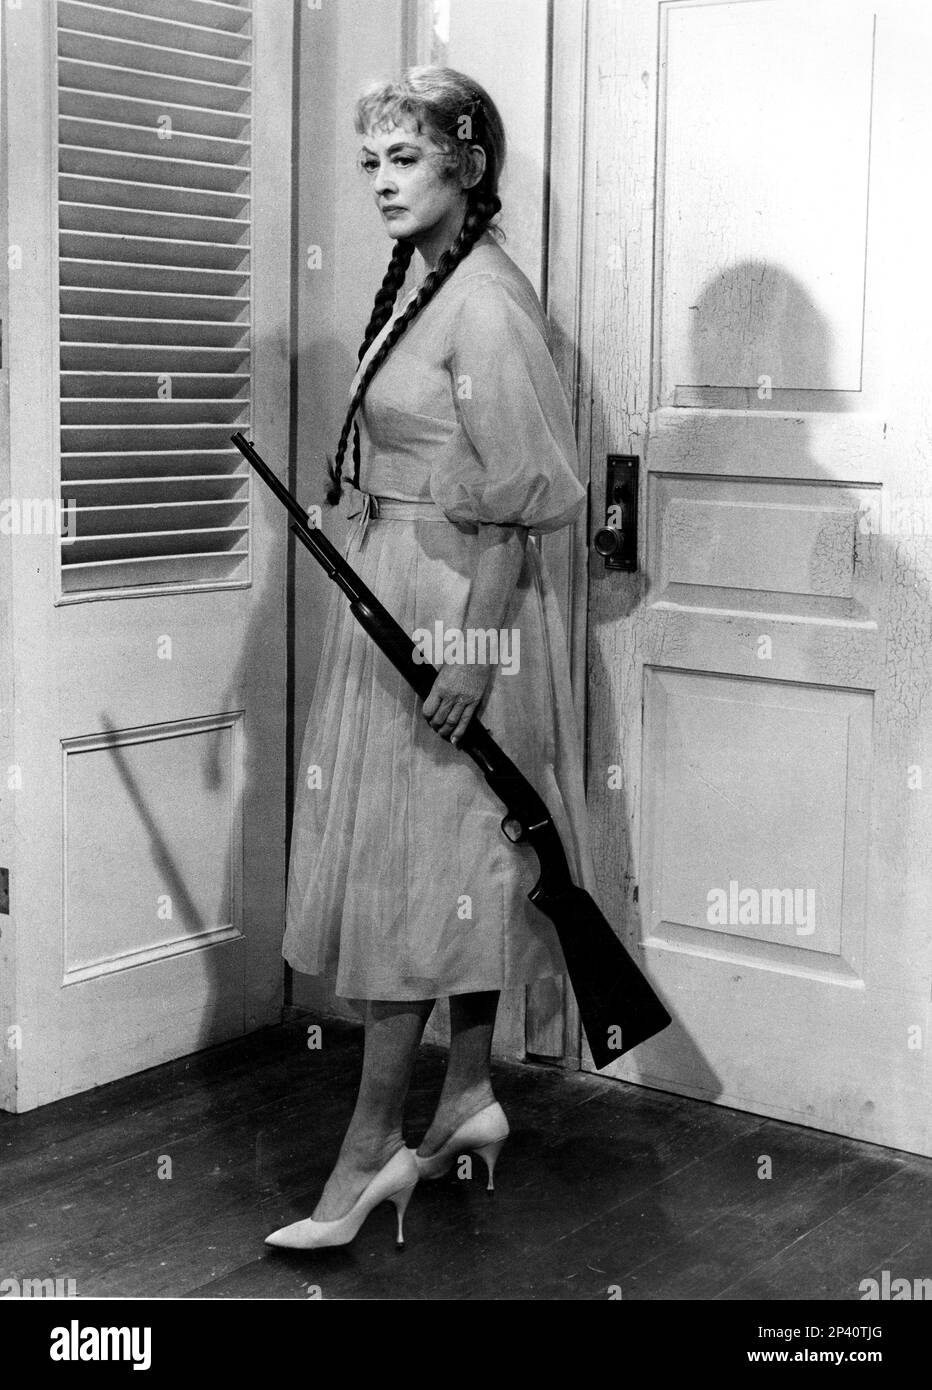 1964 : l'attrice cinematografica BETTE DAVIS ( Lowell , ma 1908 - Neuilly , France 1989 ) in HUSH ... HUSH , CHARLOTTE DOLCE ( PIANO .. Piano , dolce Carlotta ) di Robert Aldrich , da un romanzo di Henry Farrell , Pubblicity still - CINEMA - FILM - attrice - ritratto - ritratto - abito trasparente - abito vestito trasparente - TRILLER - ORRORE - treccia - treccie - fucile - arma - fucile - scarpe - scarpe ---- Archivio GBB Foto Stock